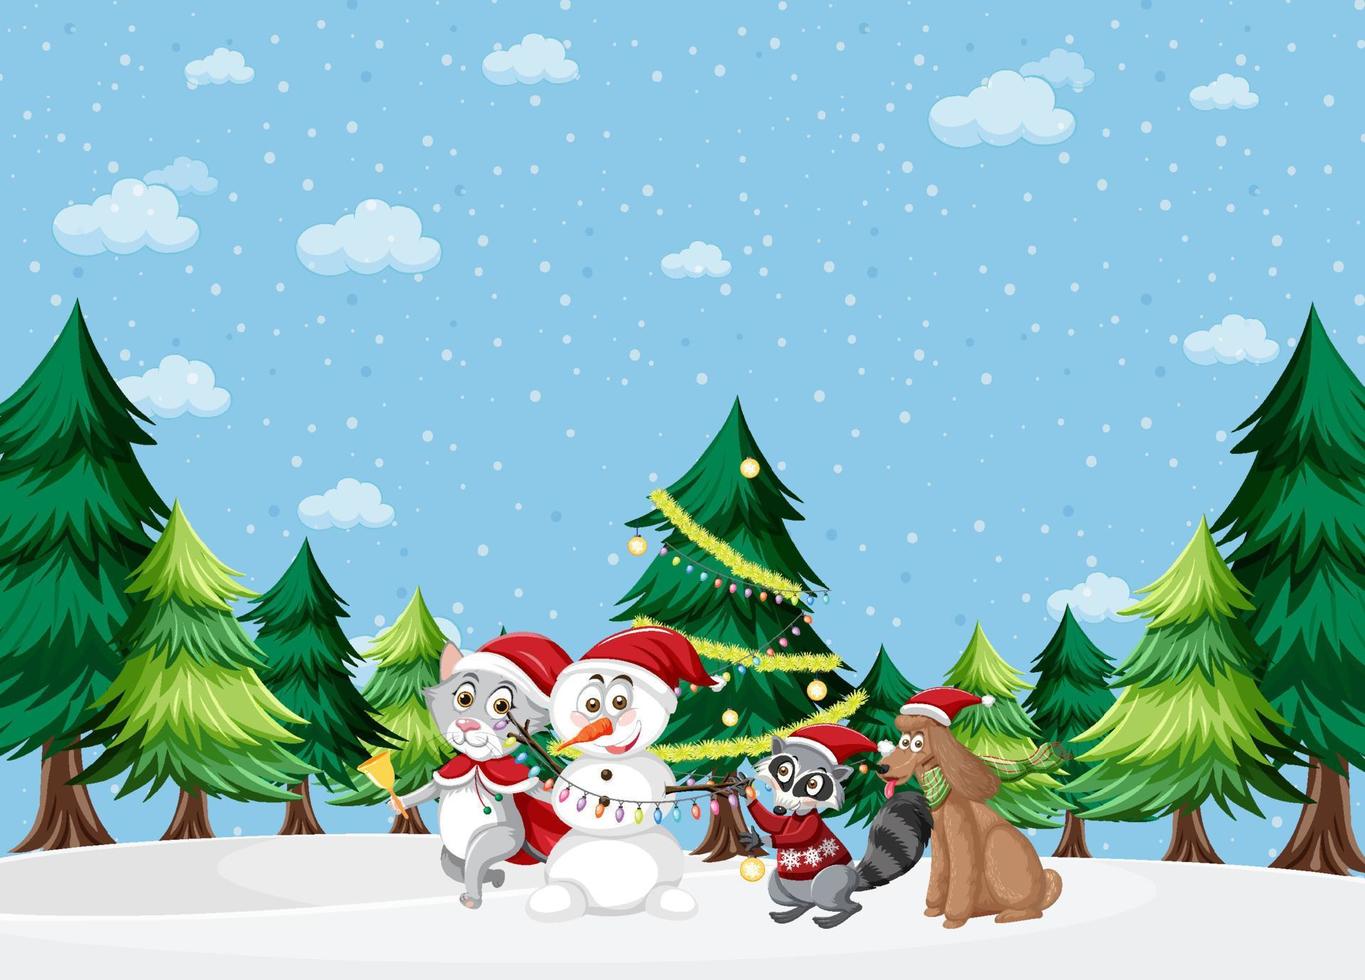 férias de natal com boneco de neve na neve vetor